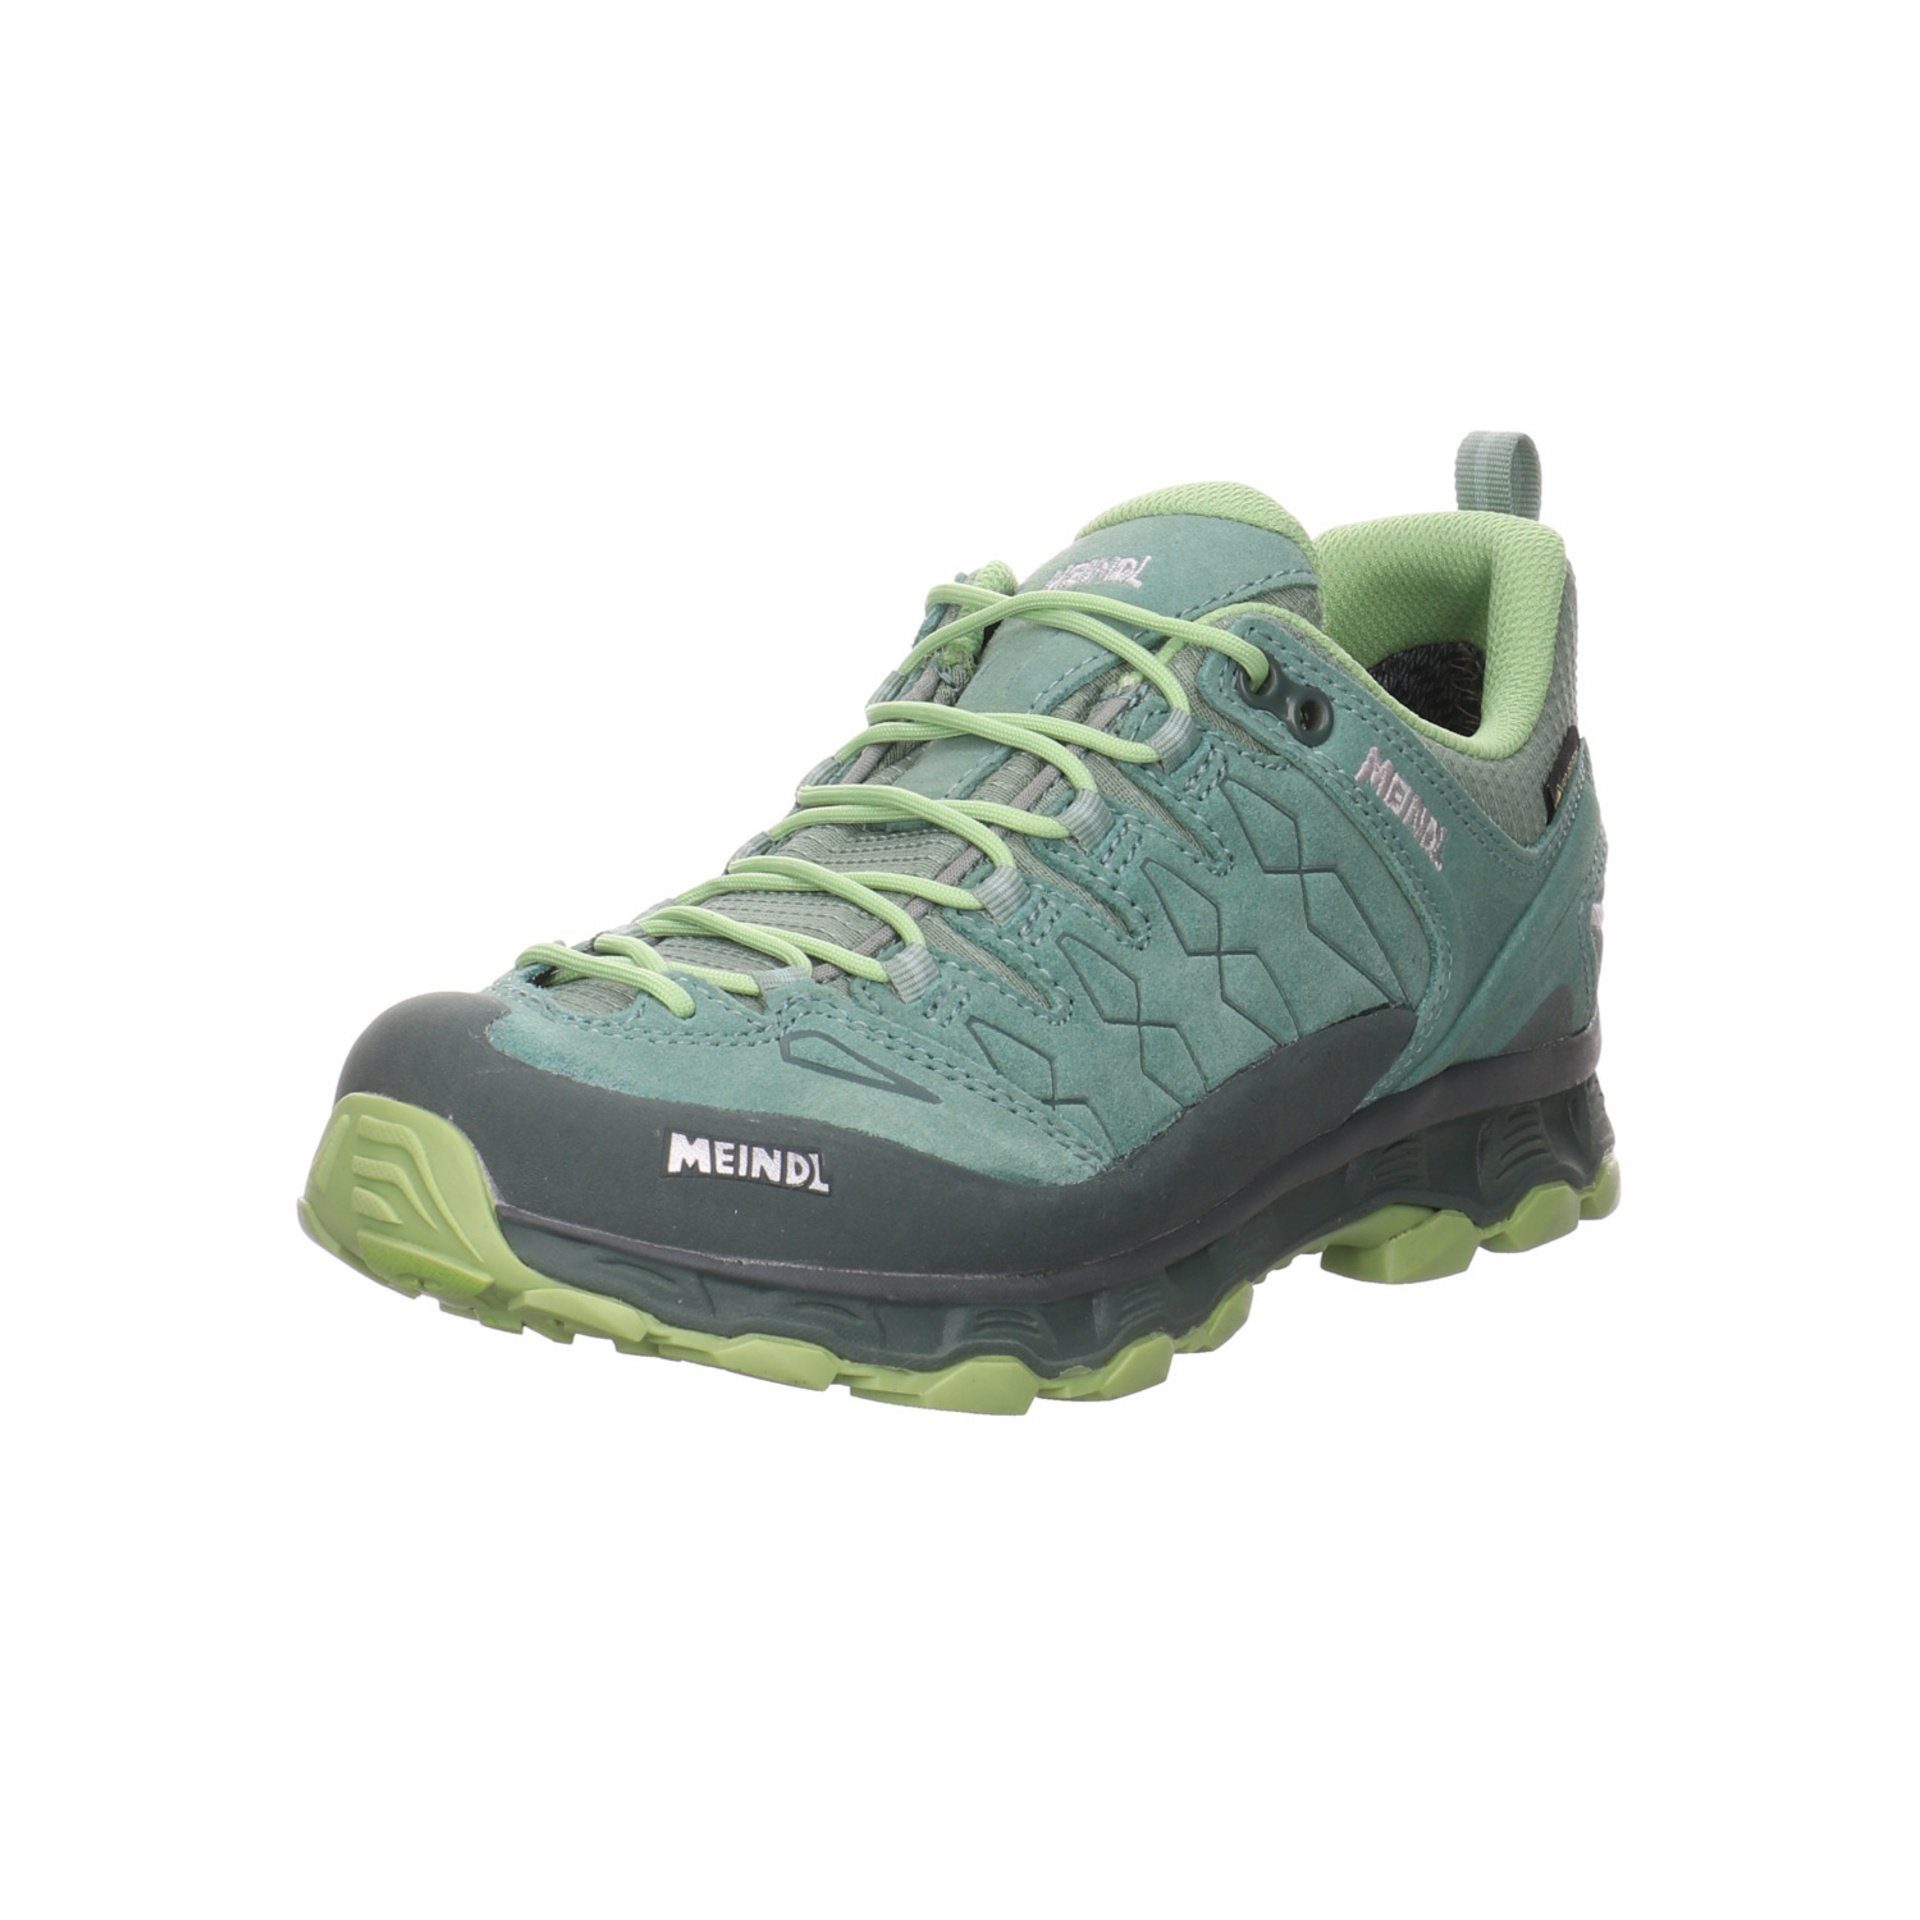 Meindl Damen Schuhe Outdoor Outdoorschuh Leder-/Textilkombination grün+petrol sonst Ko